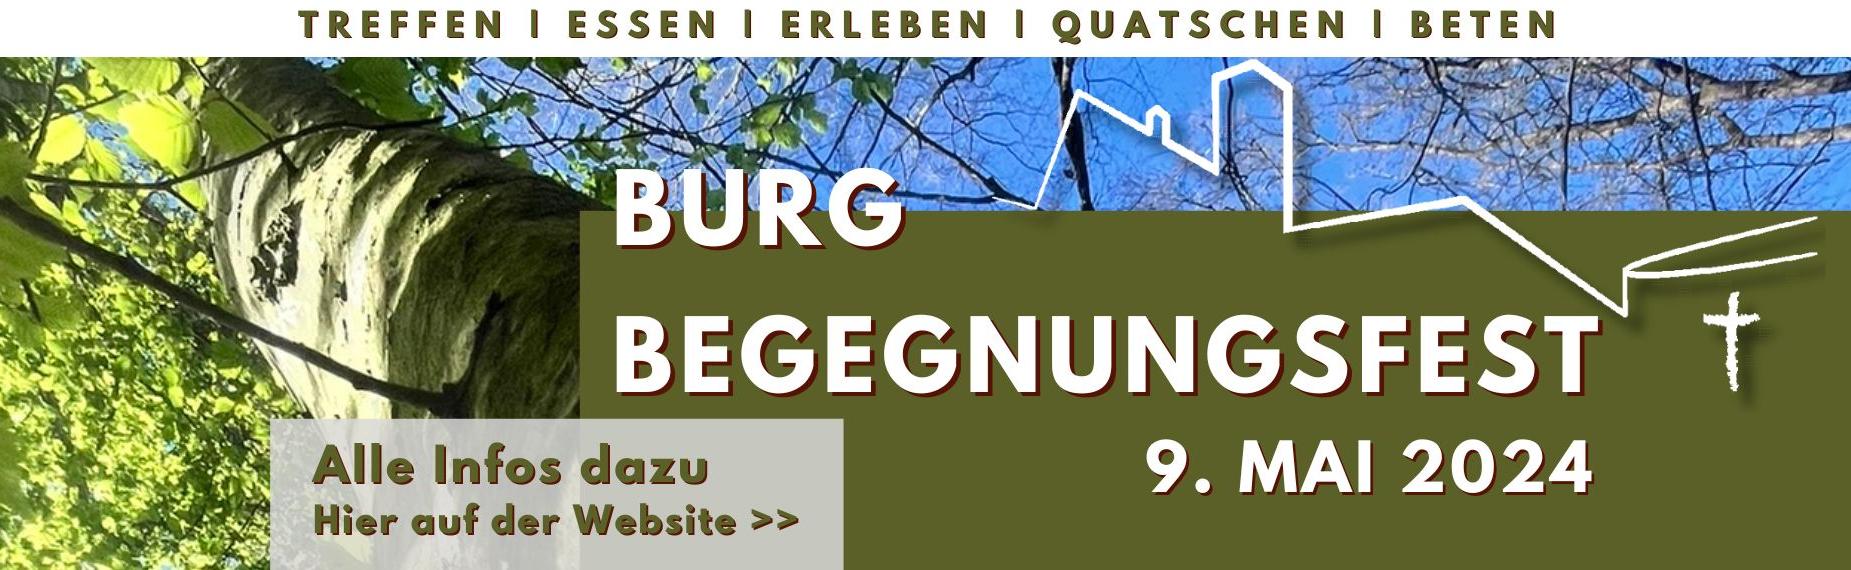 Burgbegegnungsfest 2024